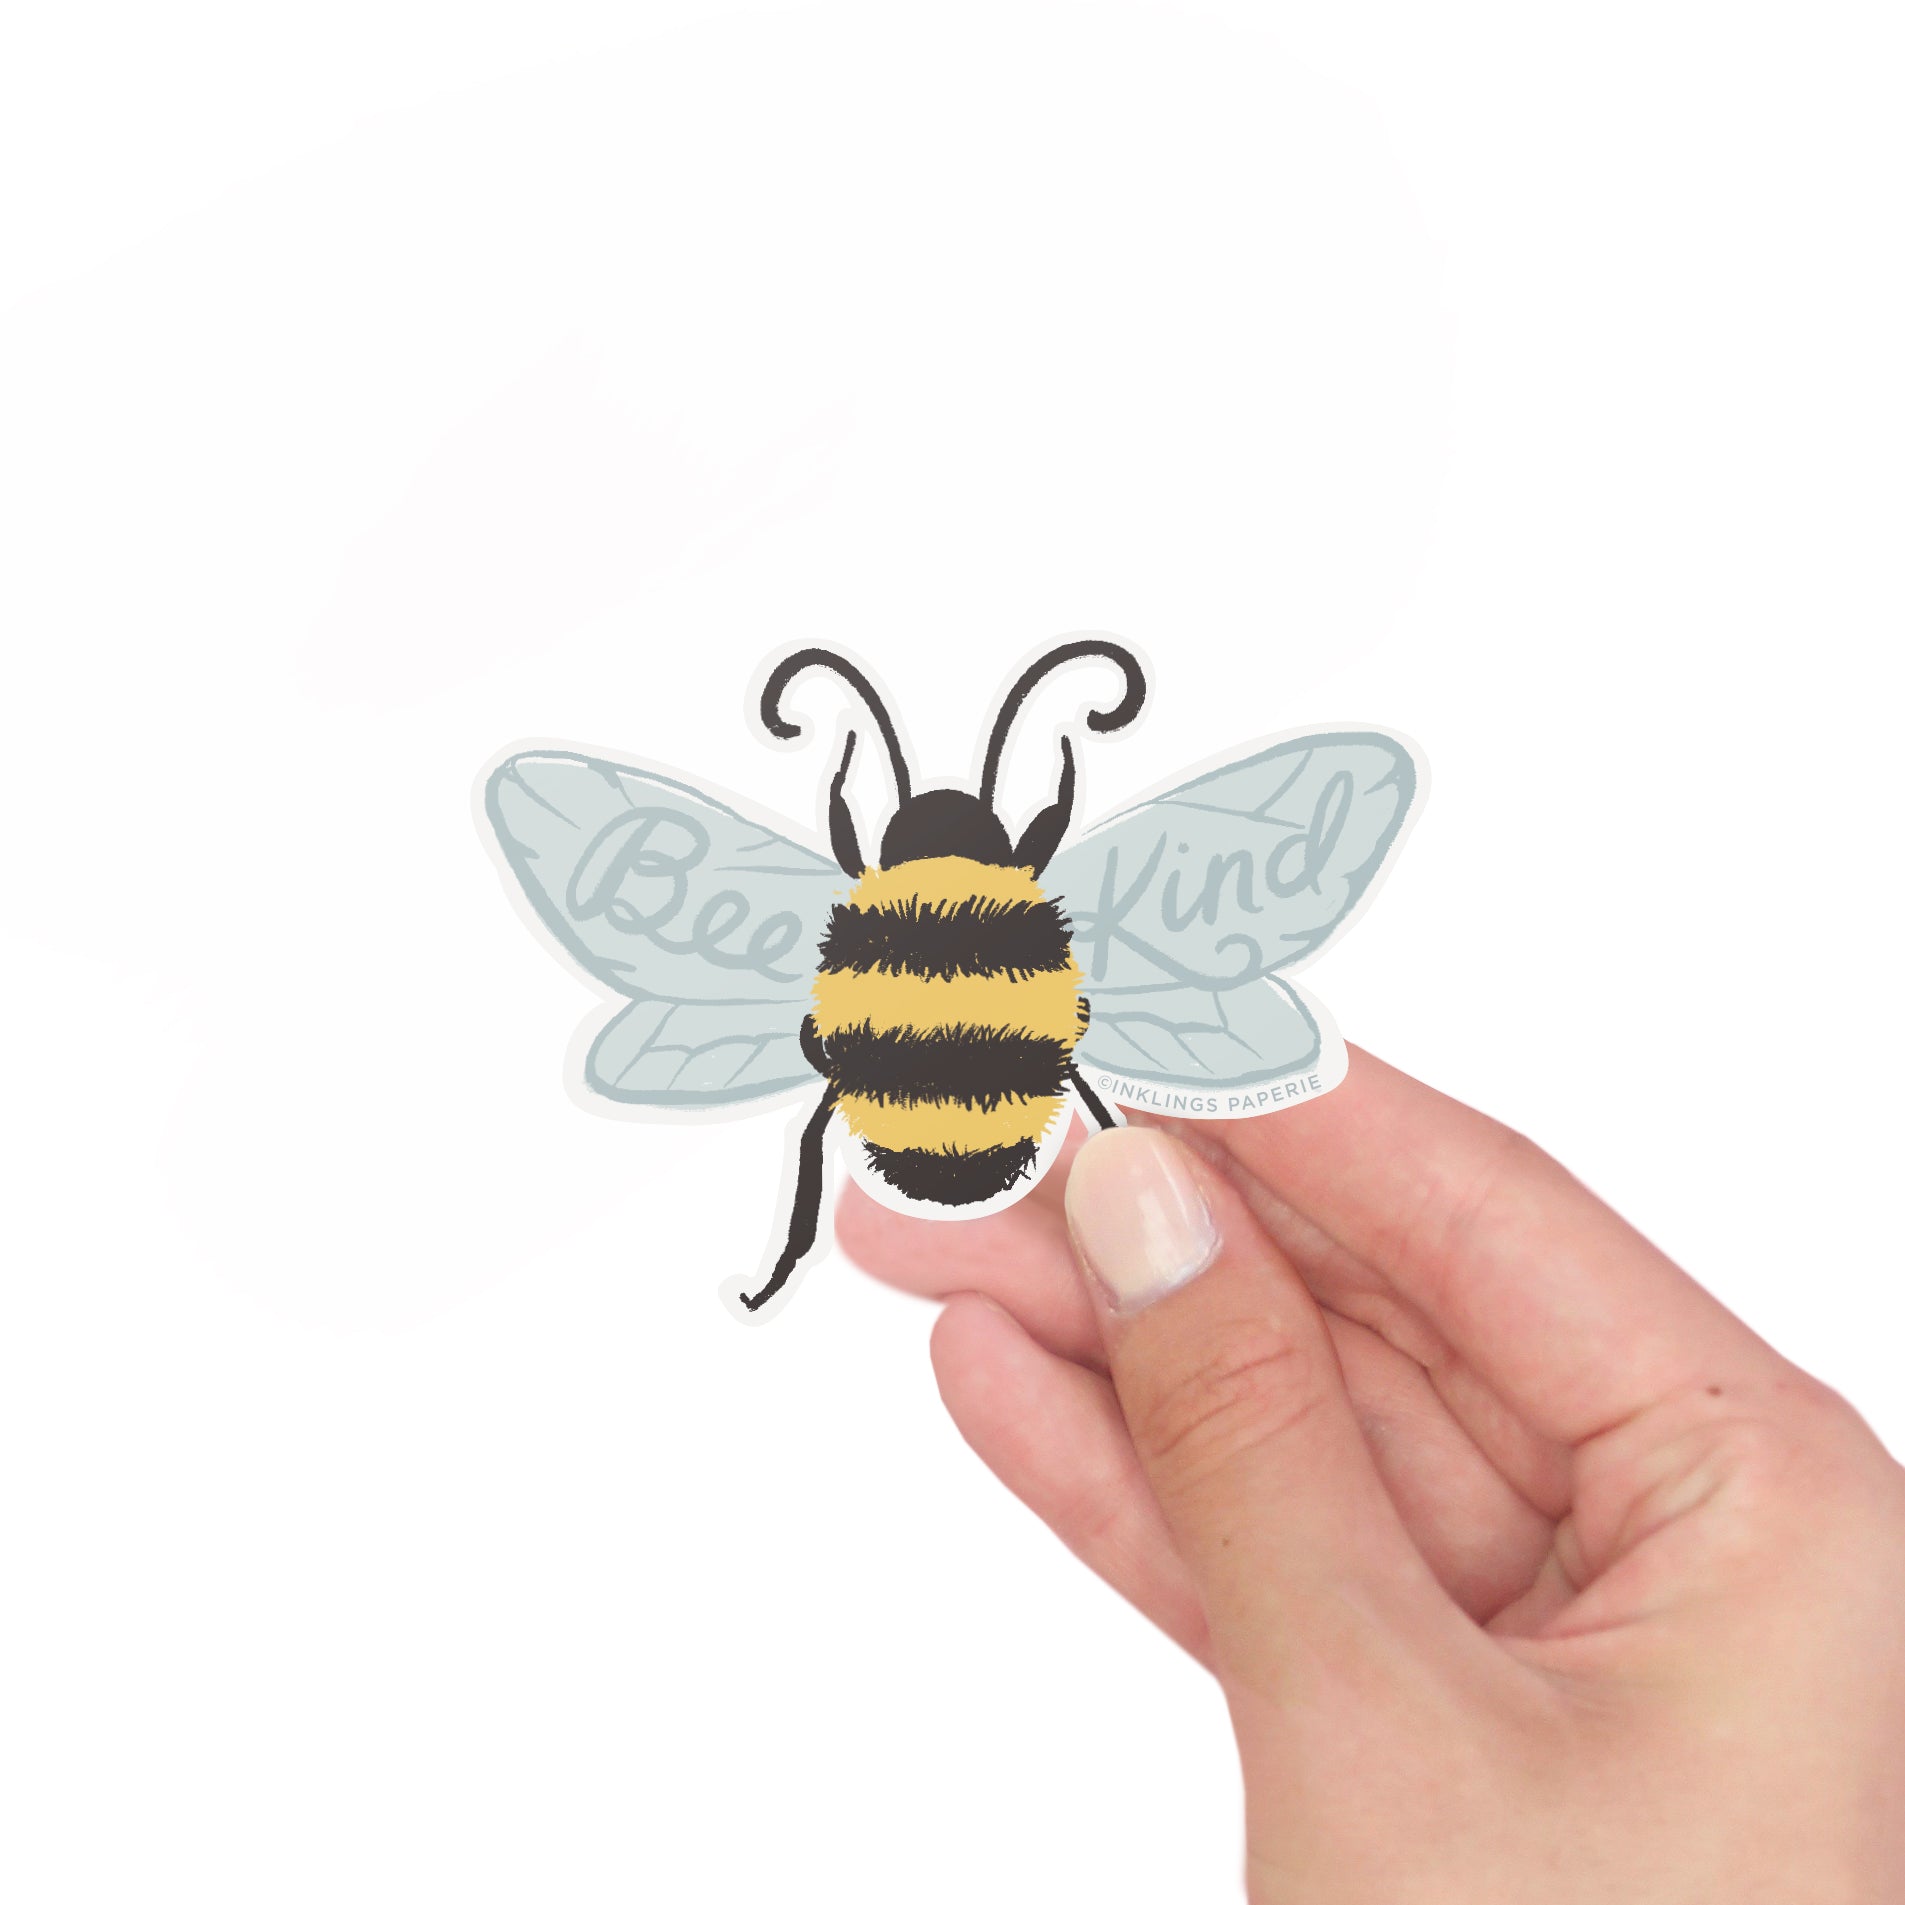 Bee Kind Vinyl Sticker – Inklings Paperie